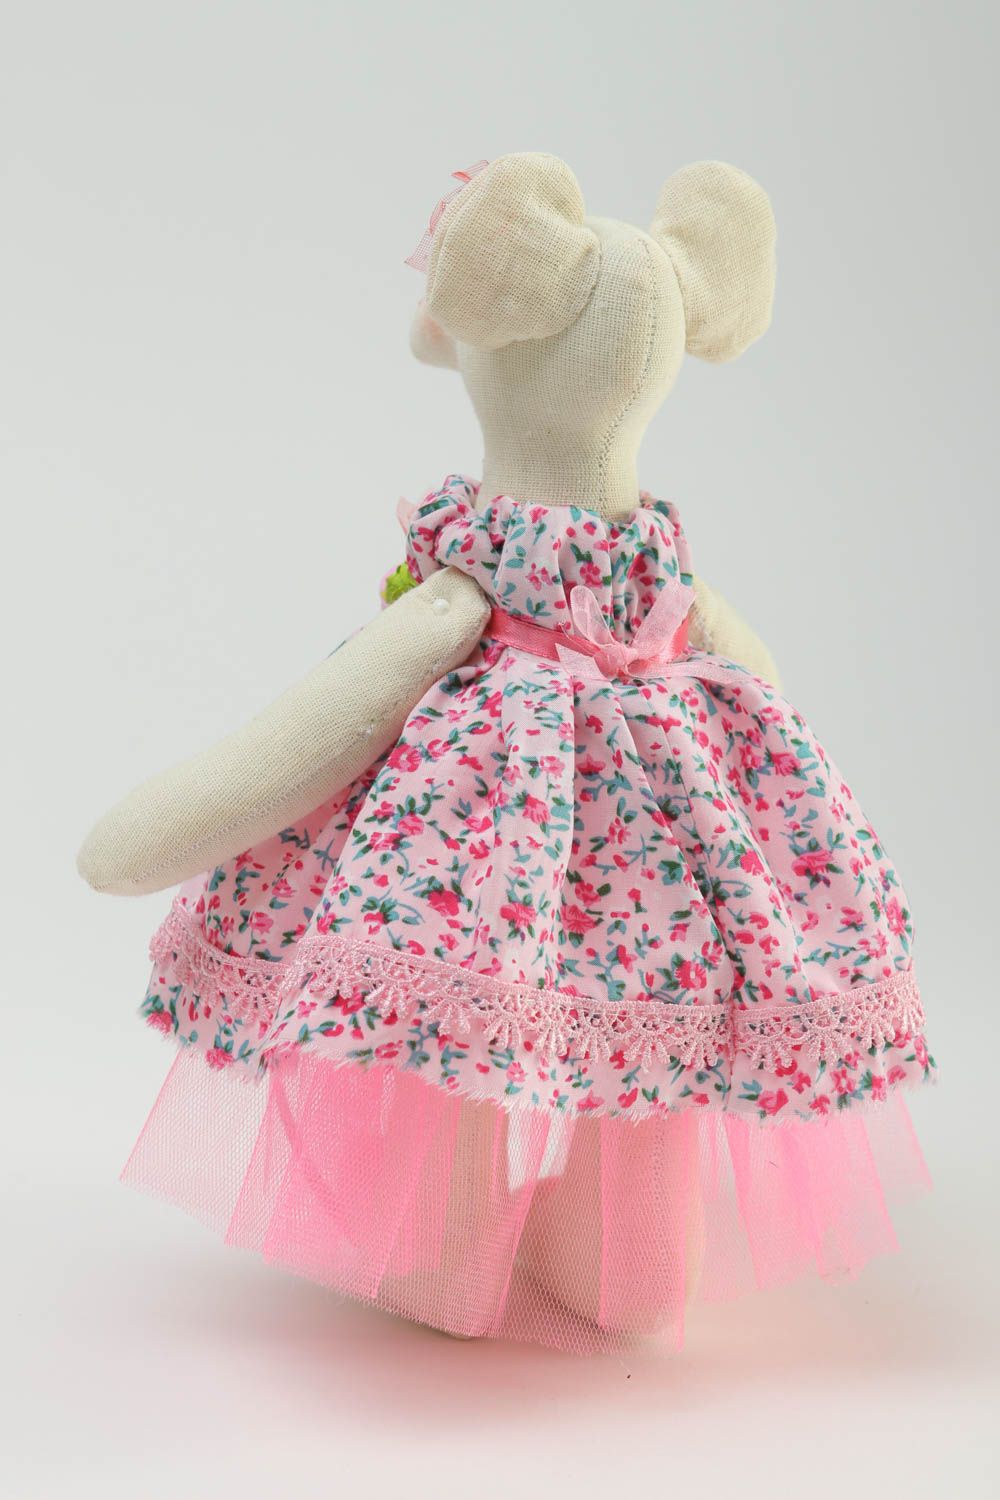 Игрушка ручной работы игрушка мышонок в платье хлопковая оригинальная игрушка  фото 4